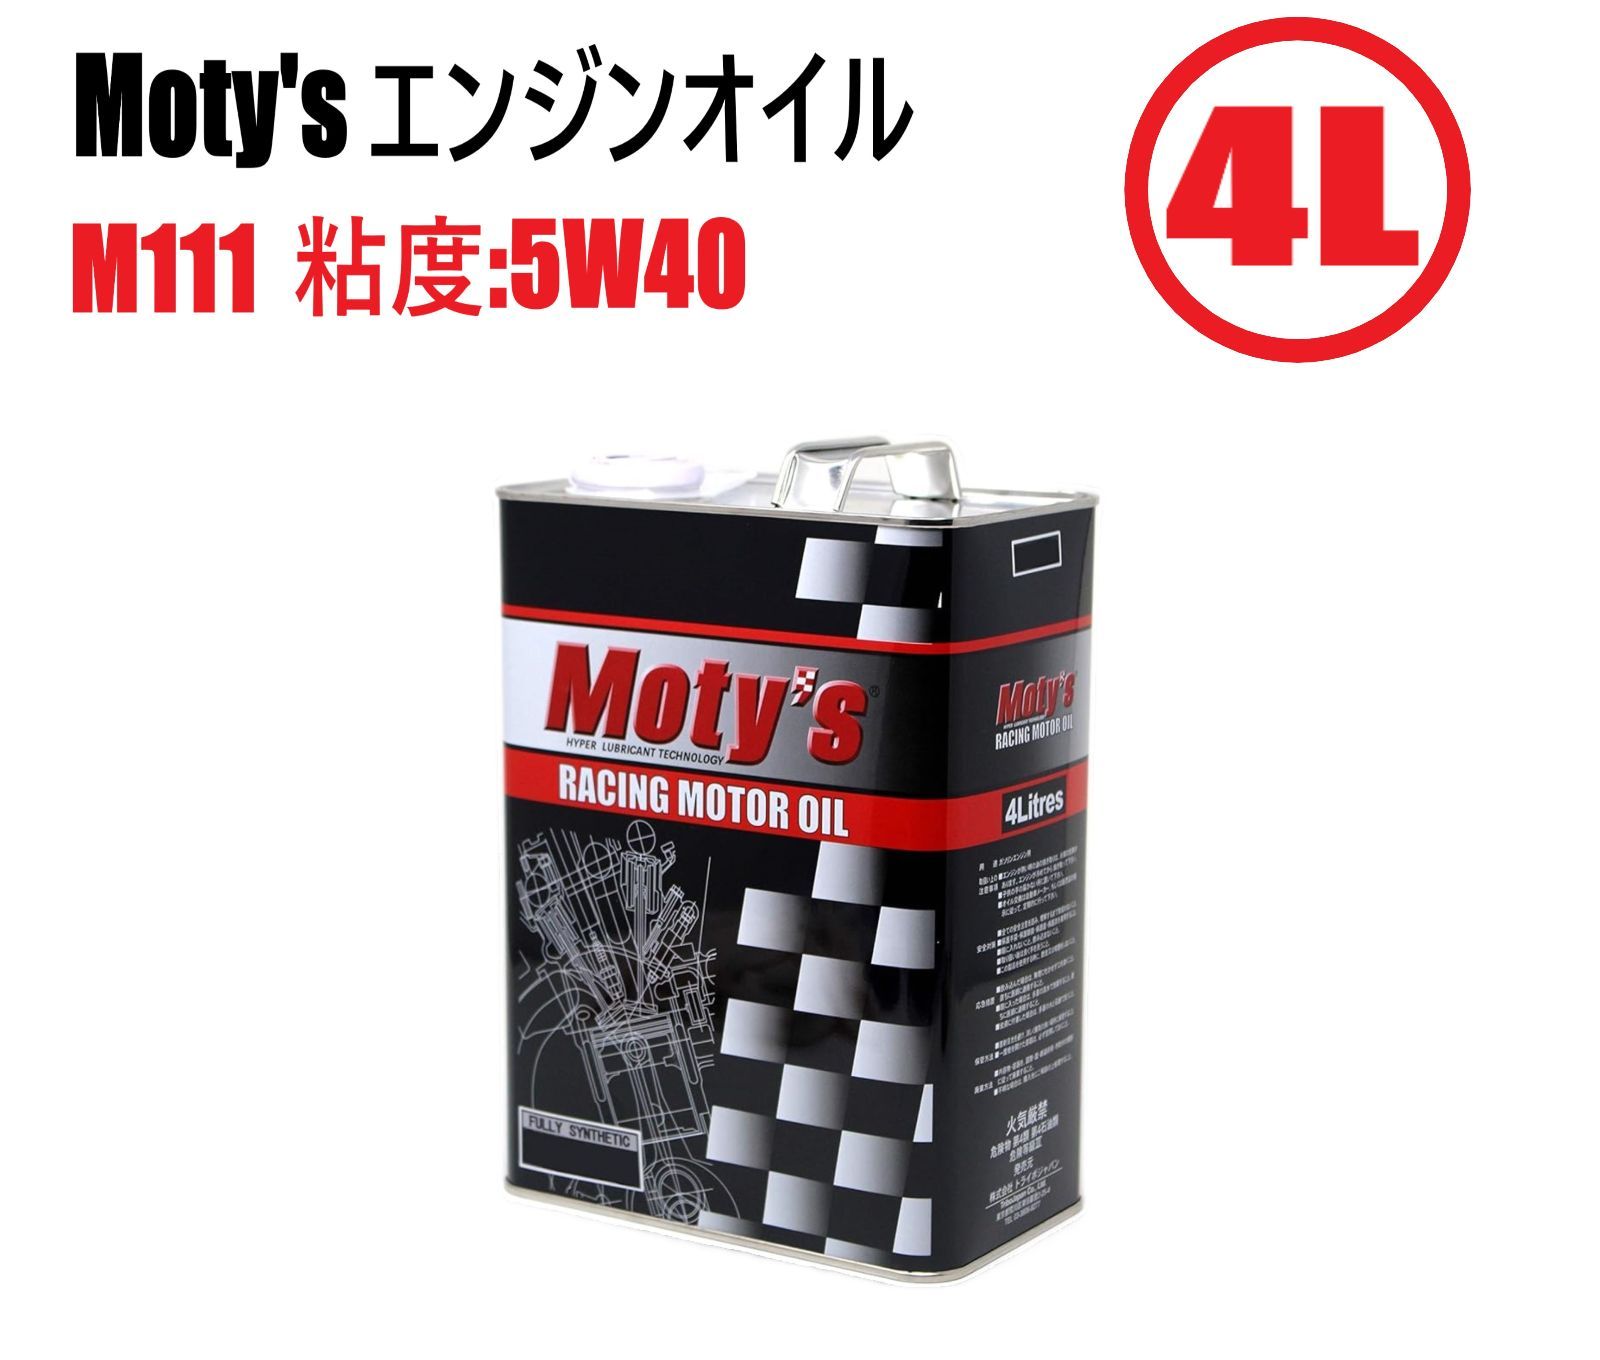 Moty's エンジンオイル M111 40(5W40) 4L缶 モティーズ 化学合成 エステル サーキット ストリート |  casadoultrassom.com.br - オイル